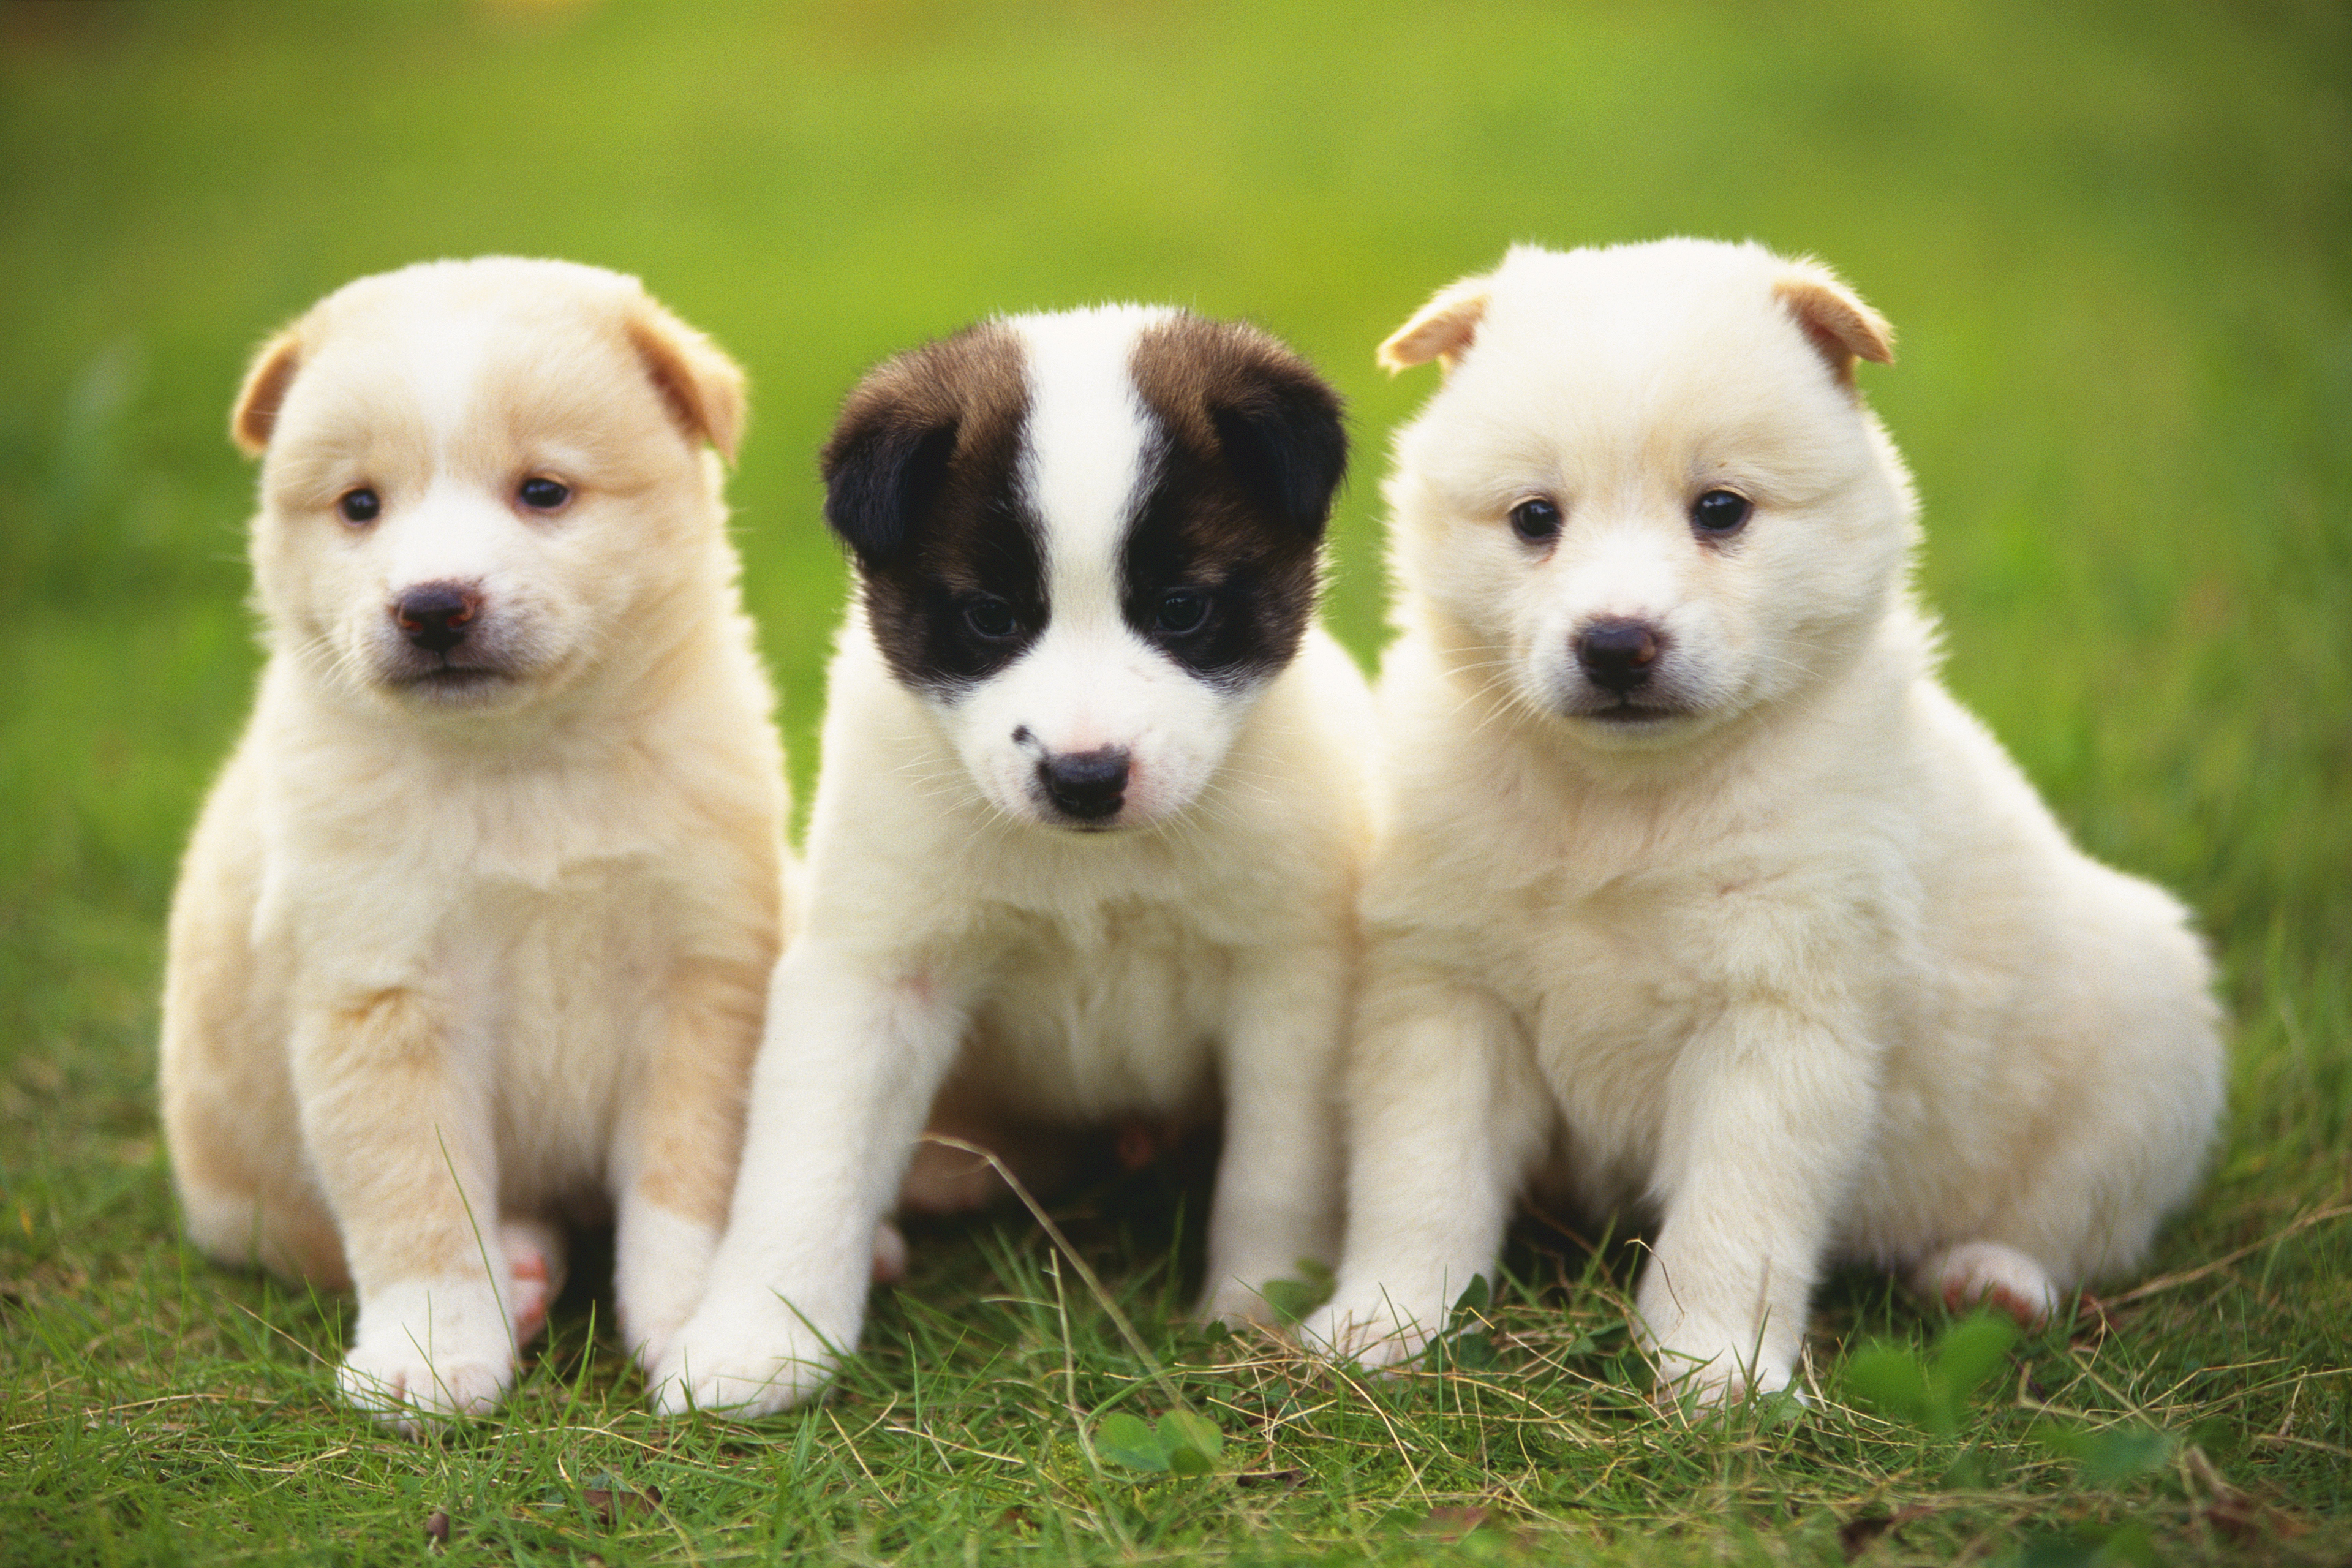 3 animals dogs. Красивые щенки. Красивые собаки. Породы щенков. Картинки щенков.